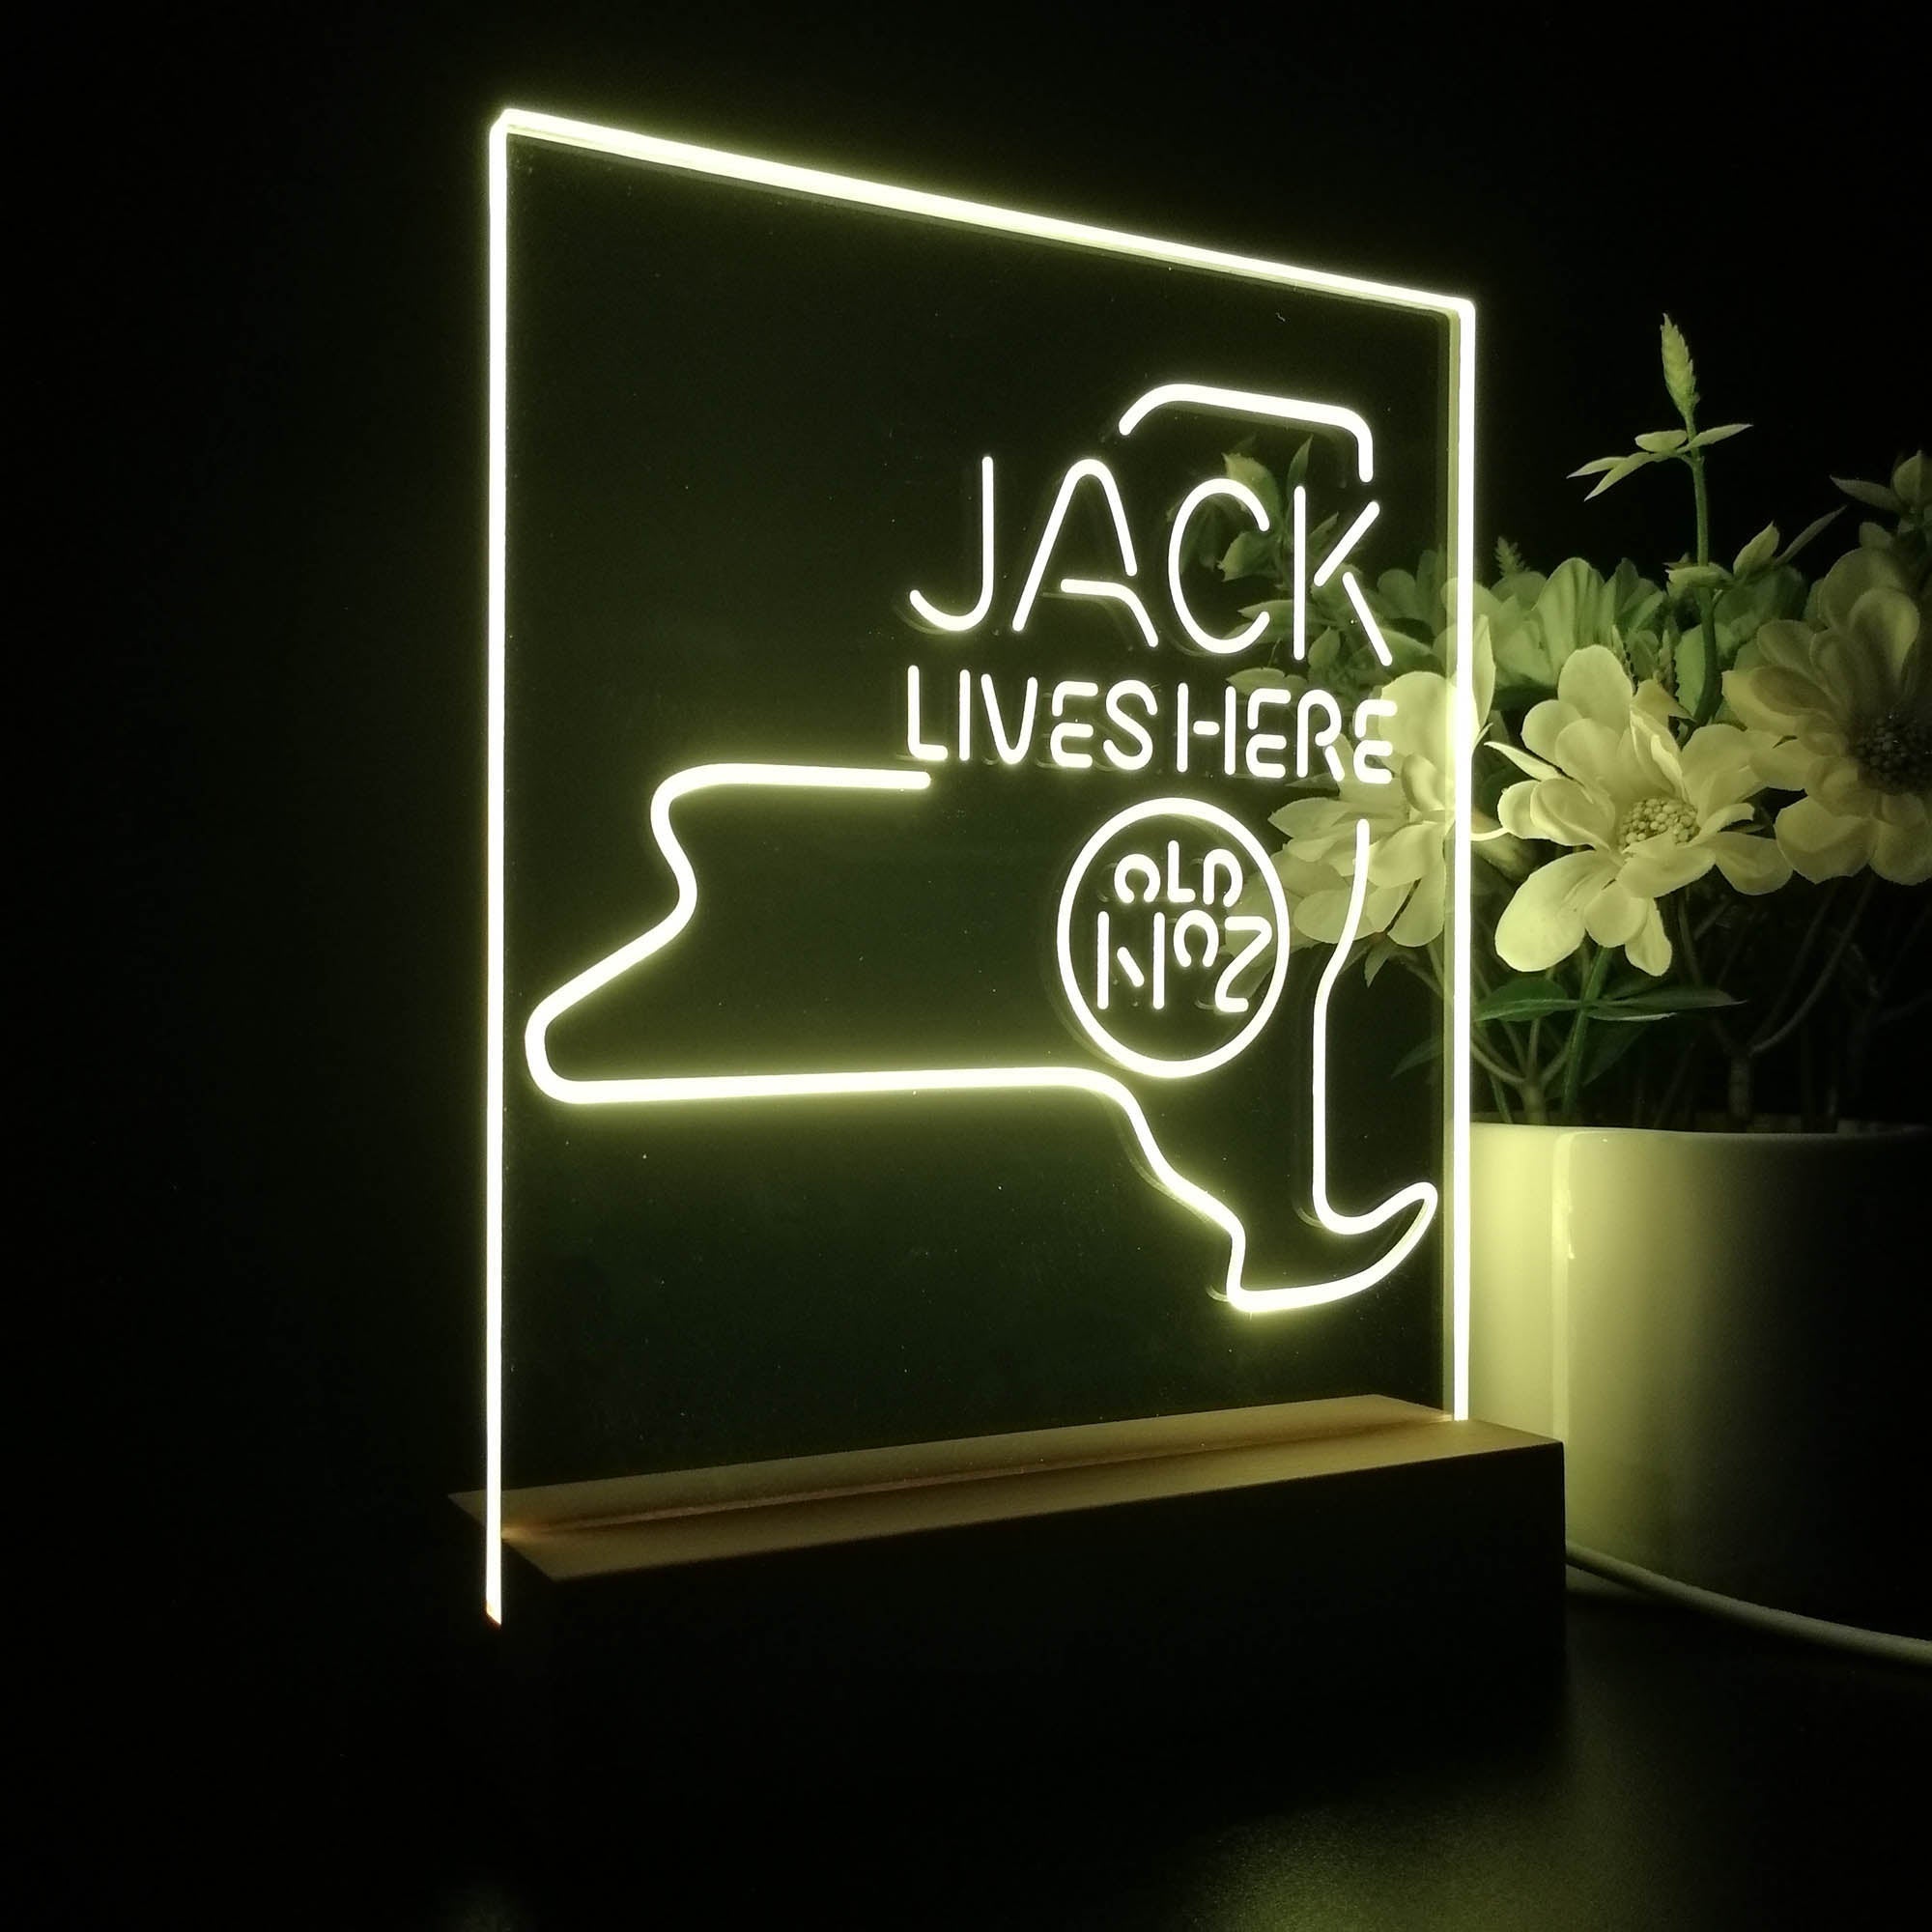 New York Jack Lives Here Night Light LED Sign